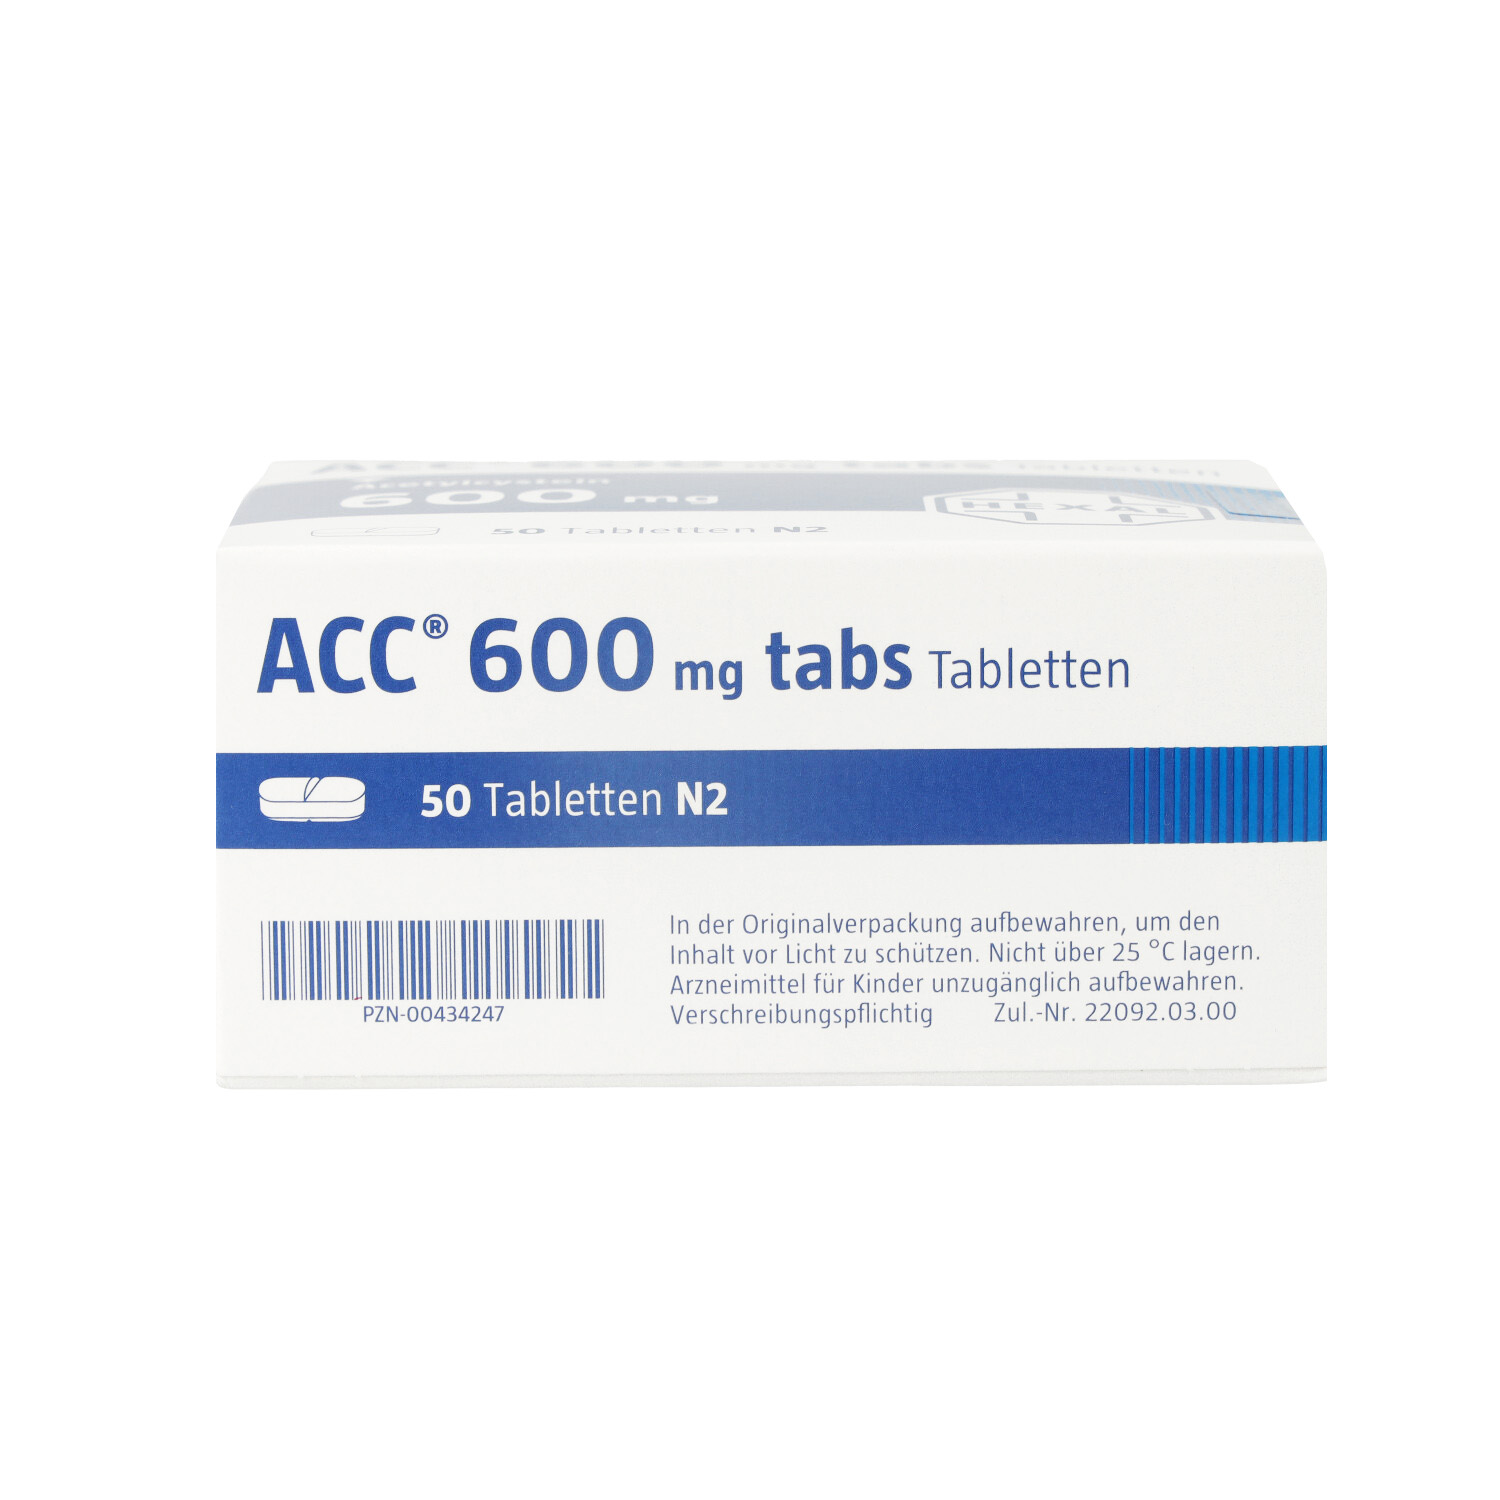 ACC 600 tabs Tabletten